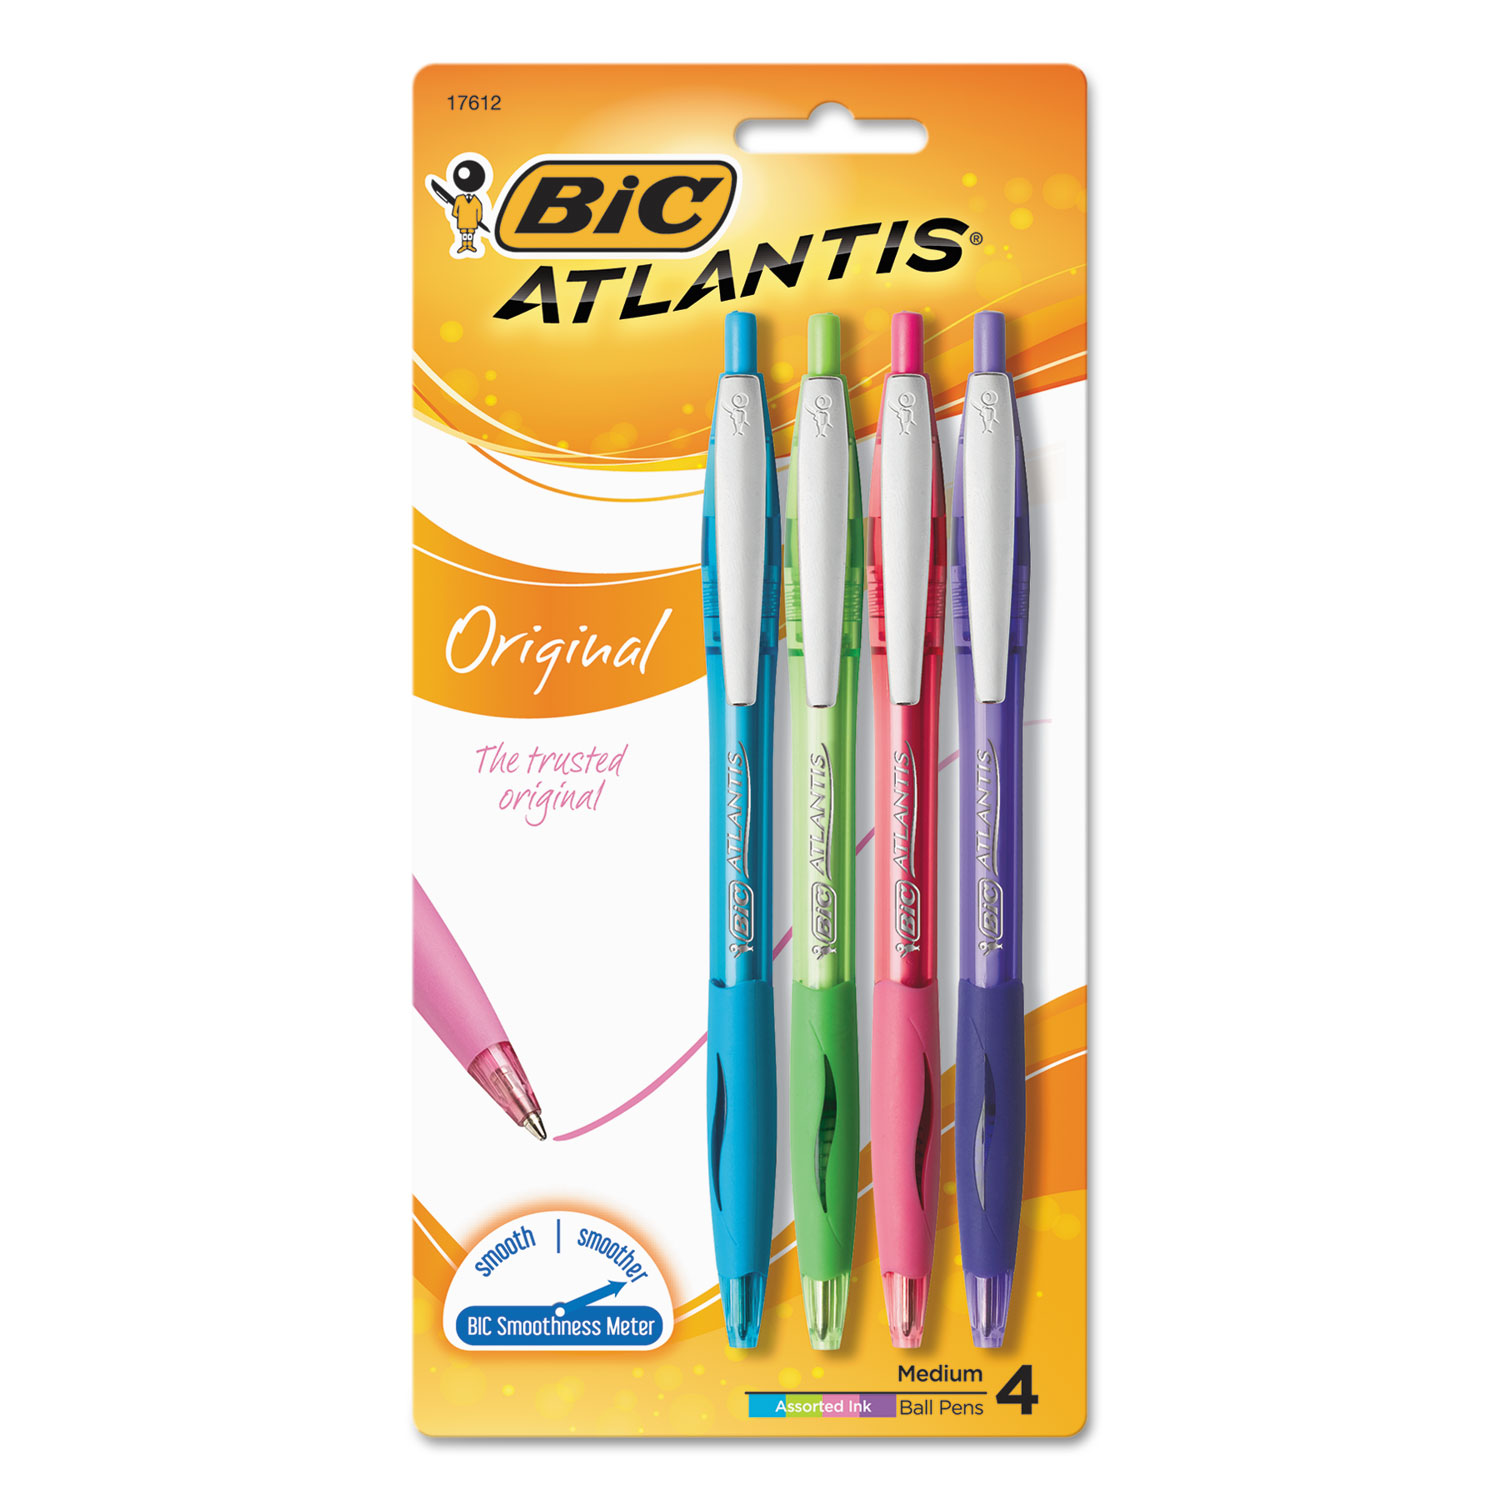  BIC VCGAP41-ASST Atlantis Retractable Ballpoint Pen, 1mm, Assorted Ink/Barrel, 4/Pack (BICVCGAP41ASST) 